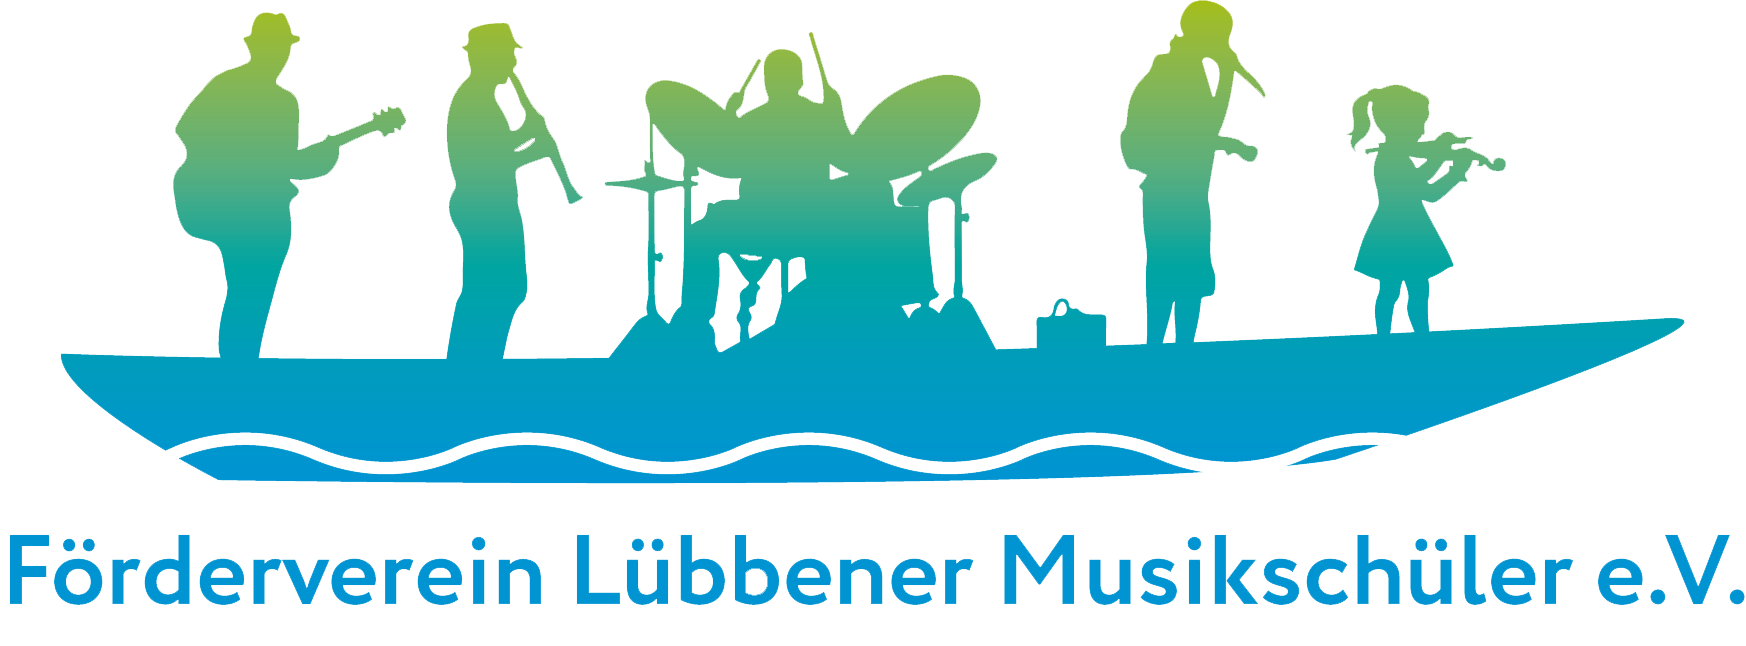 Förderverein Lübbener Musikschüler e.V.